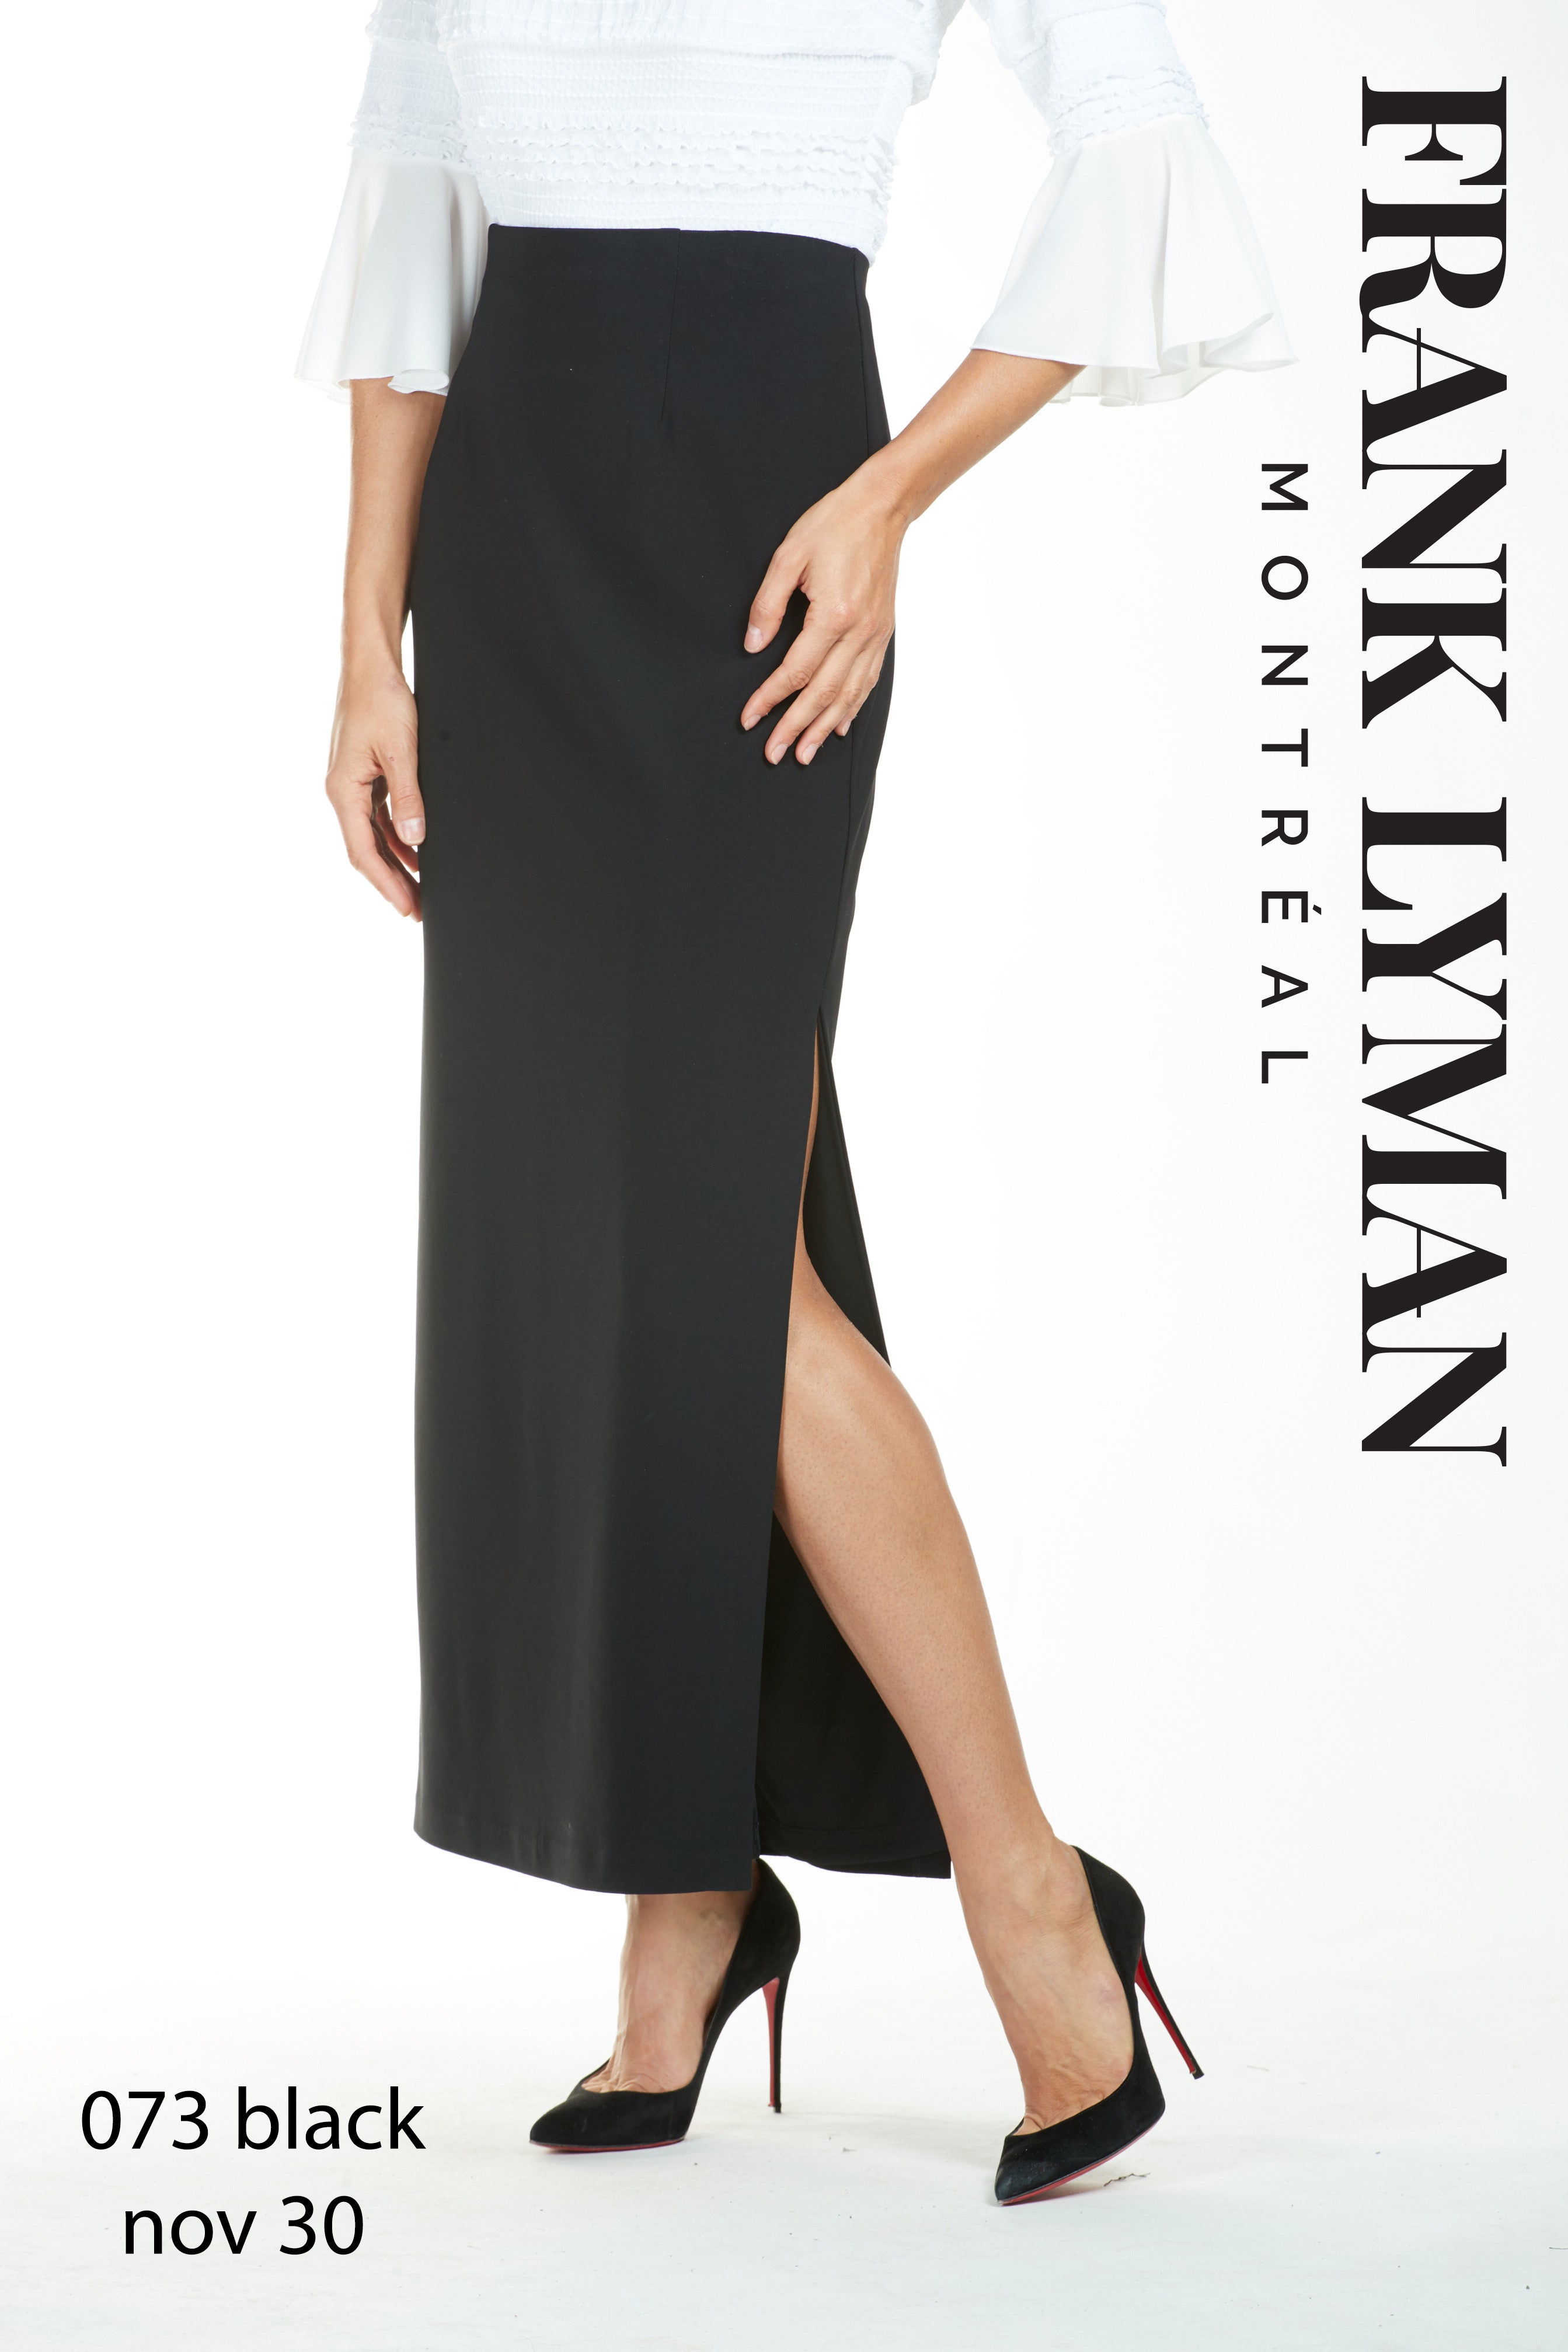 073 (Long black skirt)